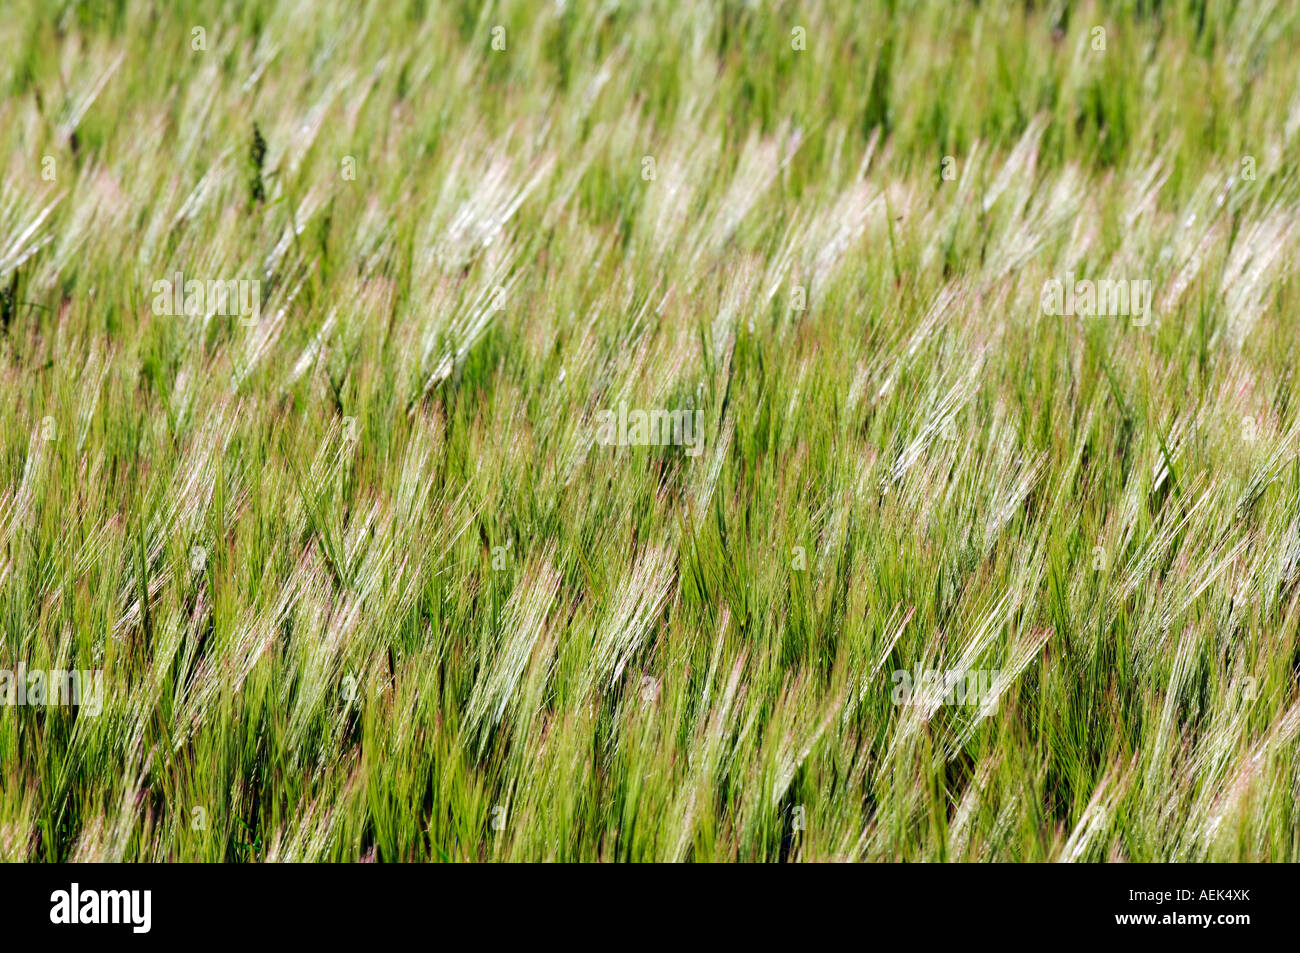 Grain field, ears of corn, ears of grain Stock Photo